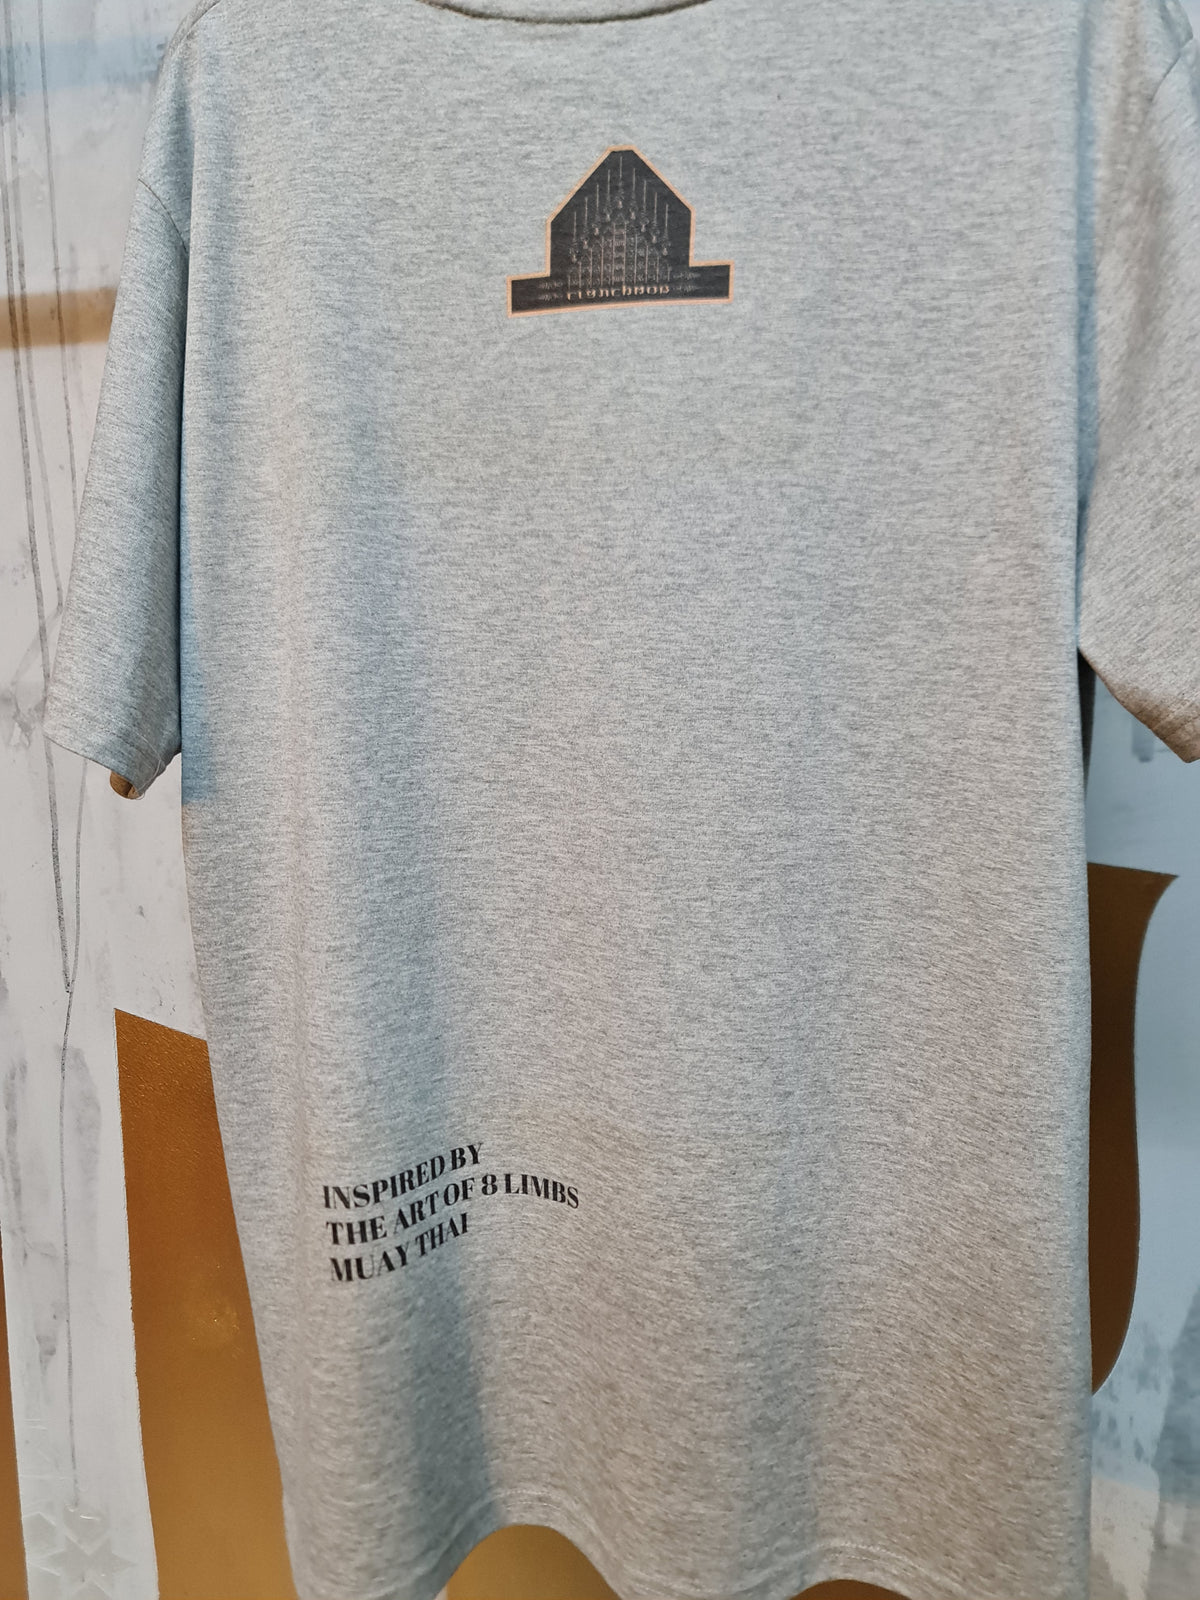 Muay Sok t-shirt - Grey